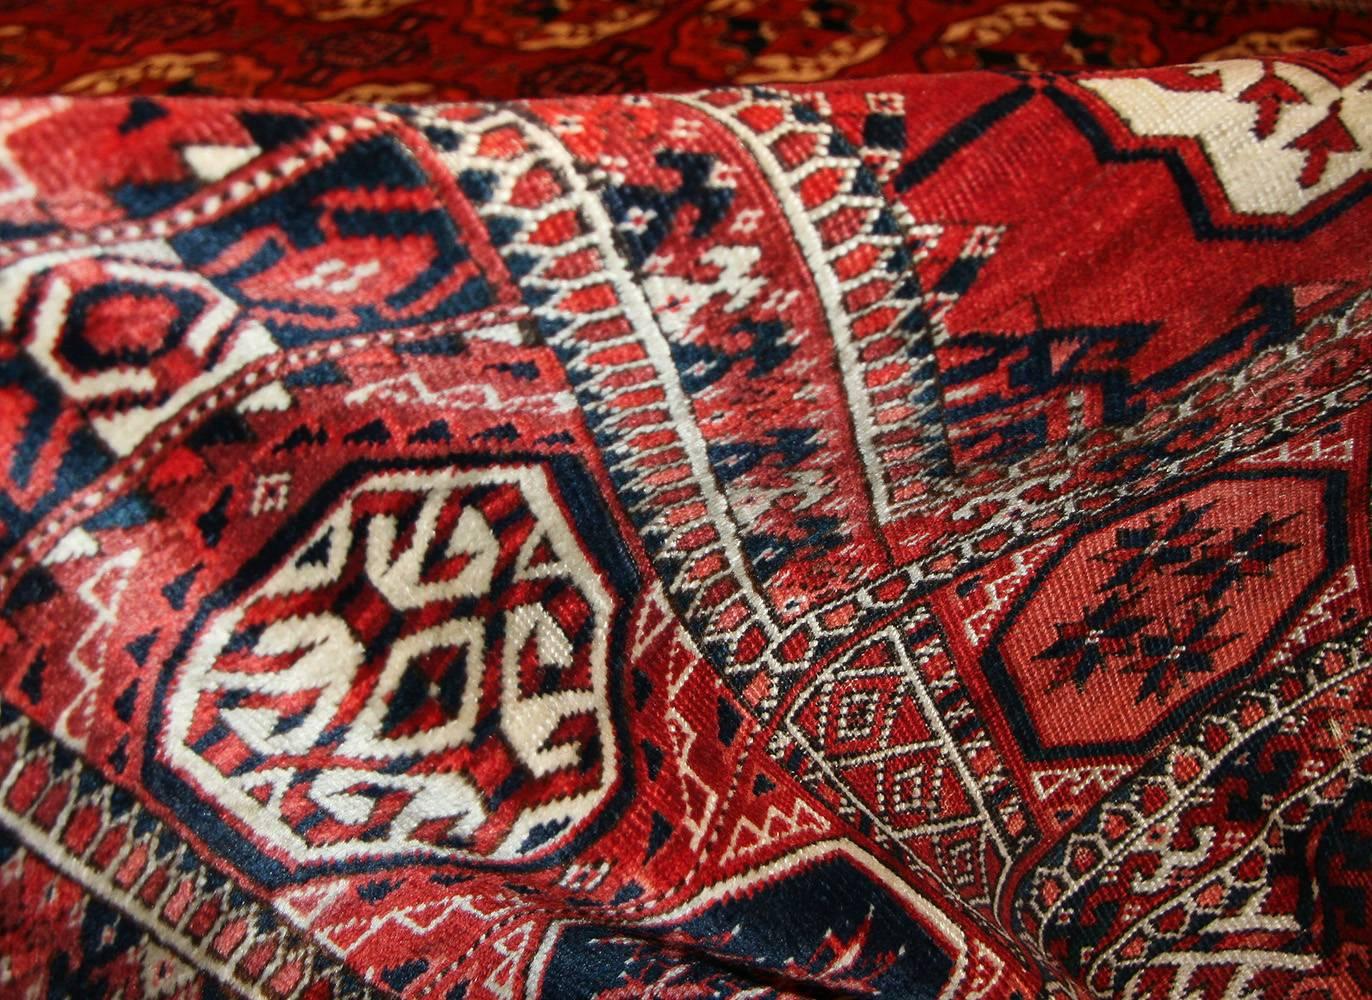 Beautiful Room Size Antique Turkmen Tekke Rug, Herkunftsland / Rug Type: Turkmenistan Teppich, CIRCA Datum: 1920. Größe: 7 ft 4 in x 11 ft 6 in (2,24 m x 3,51 m)

Dieser schöne turkmenische Tekke-Teppich ist mit traditionellen, antiken turkmenischen